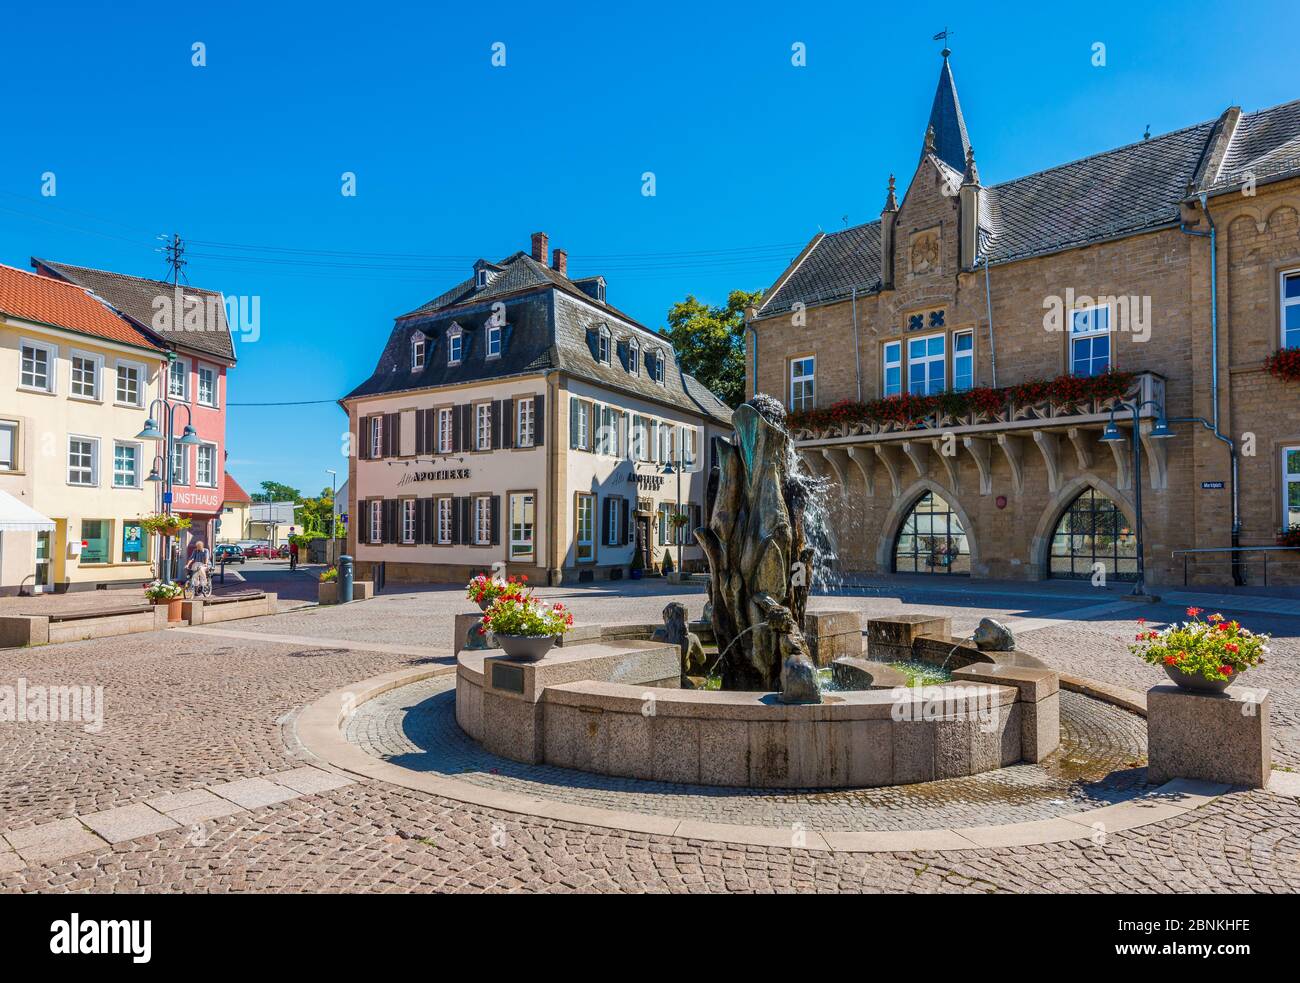 Place du marché à Bad Sobernheim, quartier de Bad Kreuznach, centre du Moyen-Nahe, avec fontaine, hôtel de ville et 'Alte Apotheke' Banque D'Images